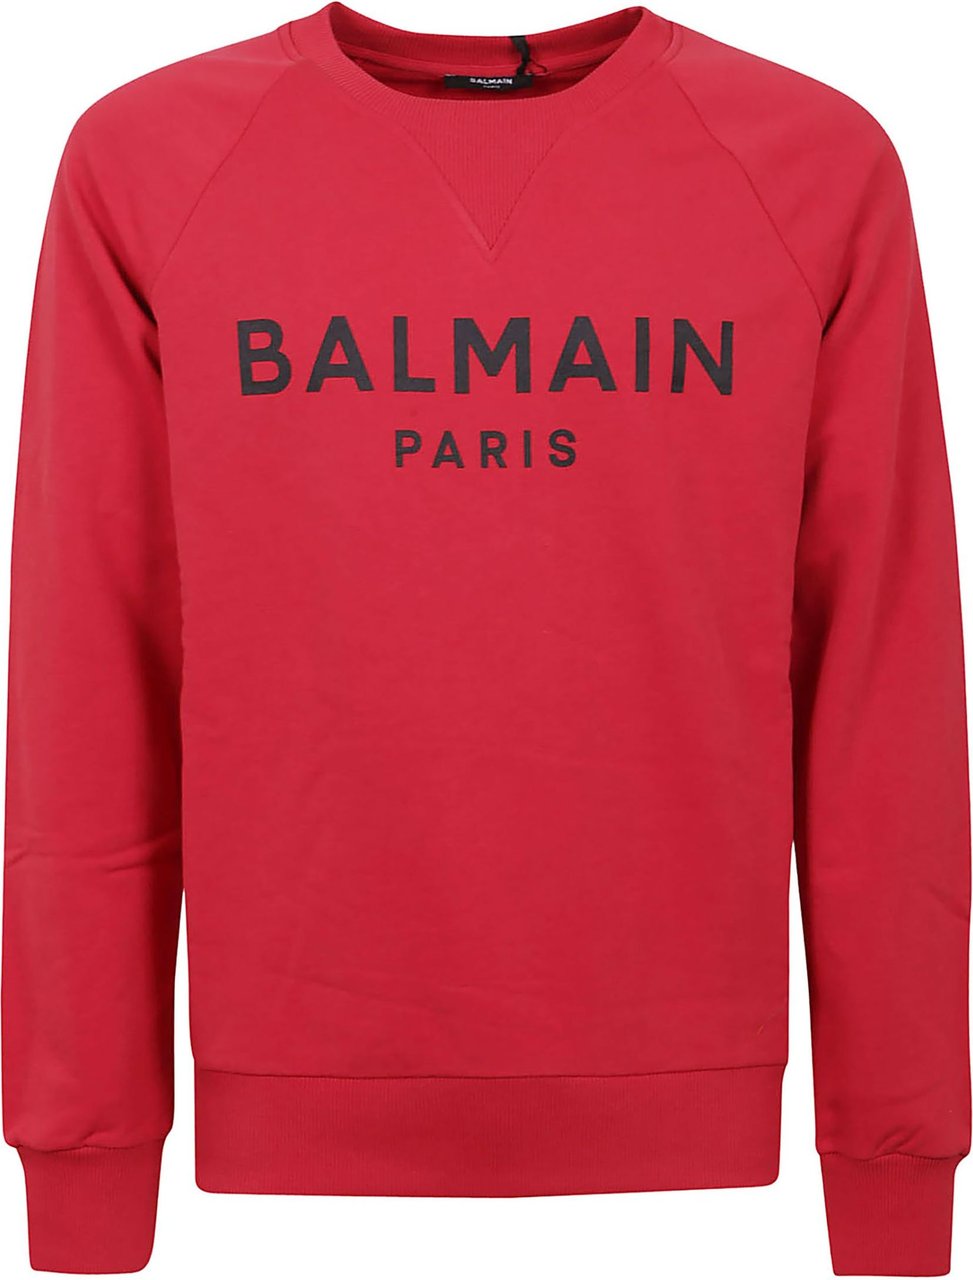 Balmain Printed Sweatshirt Divers